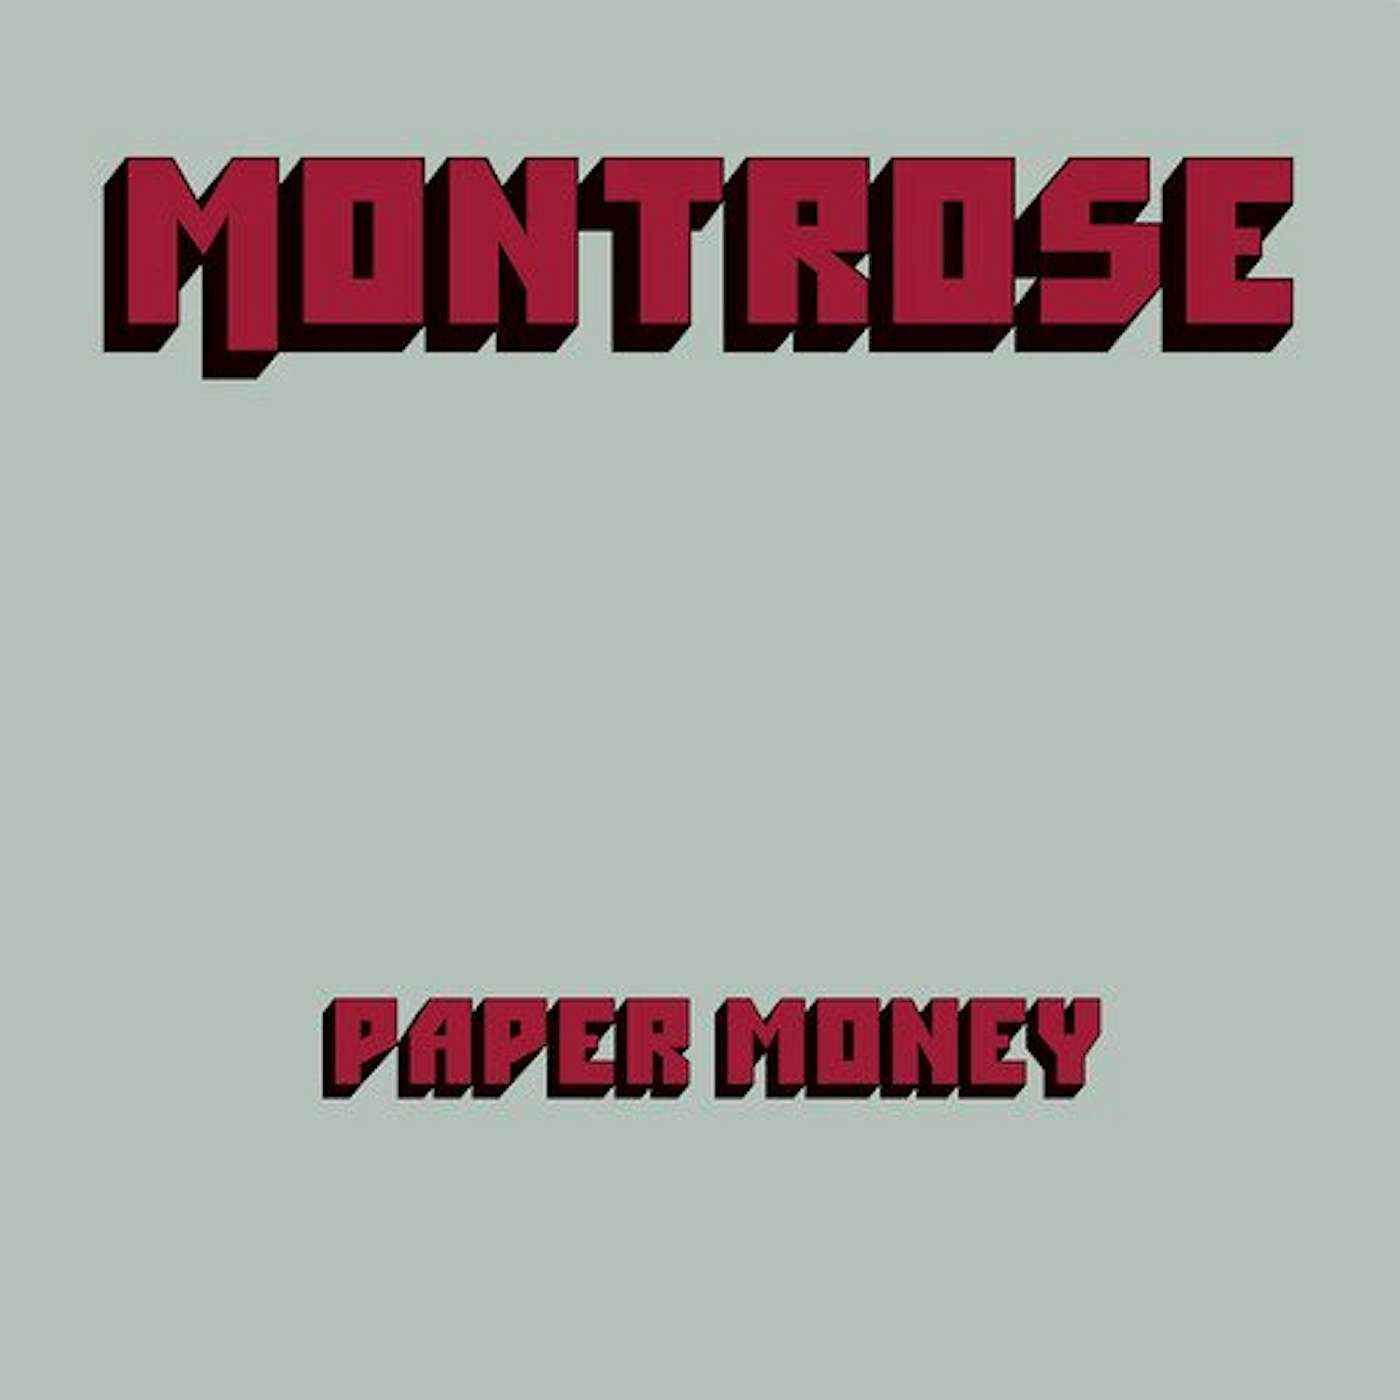 Montrose Paper Money vinyl record